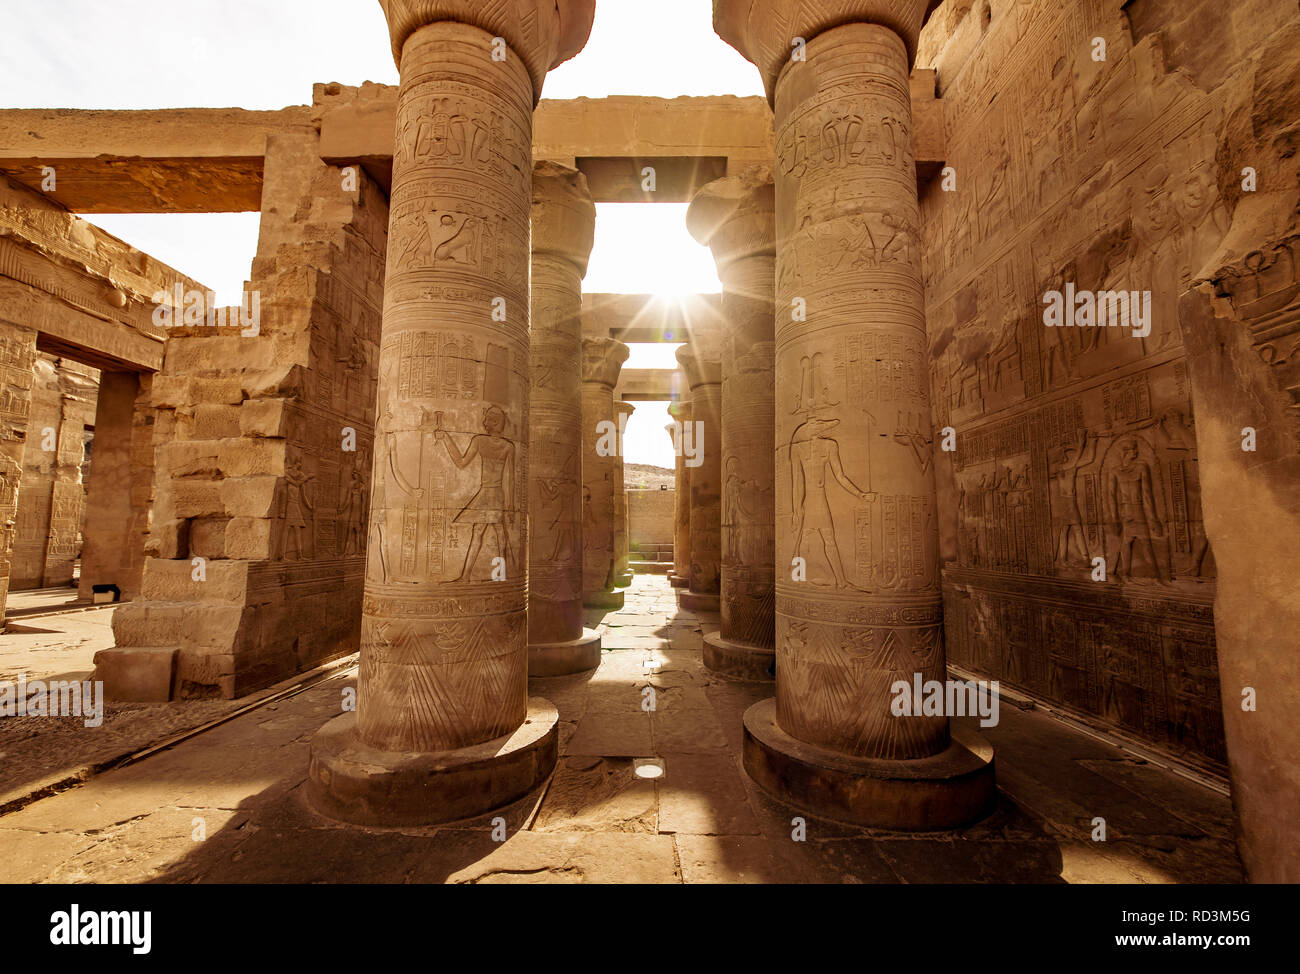 Temple de Kom Ombo dédié au dieu Sobek, en haute Égypte, construit à l'époque de la dynastie des Ptolémée Banque D'Images